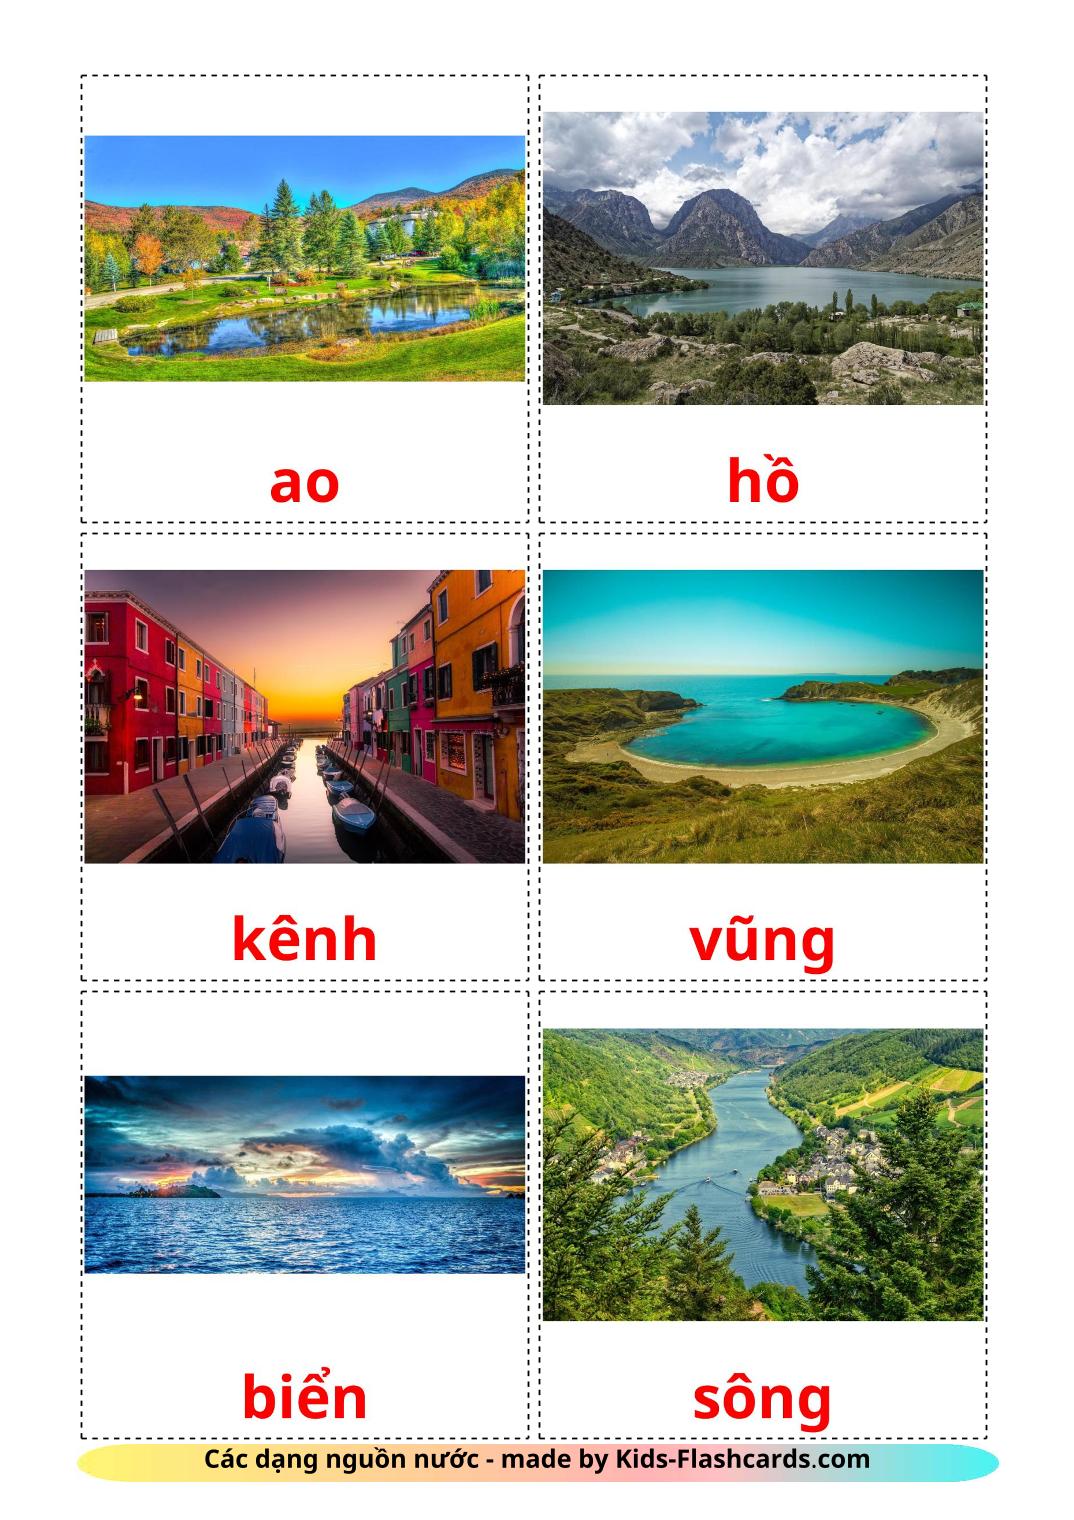 Cuerpos de agua - 30 fichas de vietnamita para imprimir gratis 